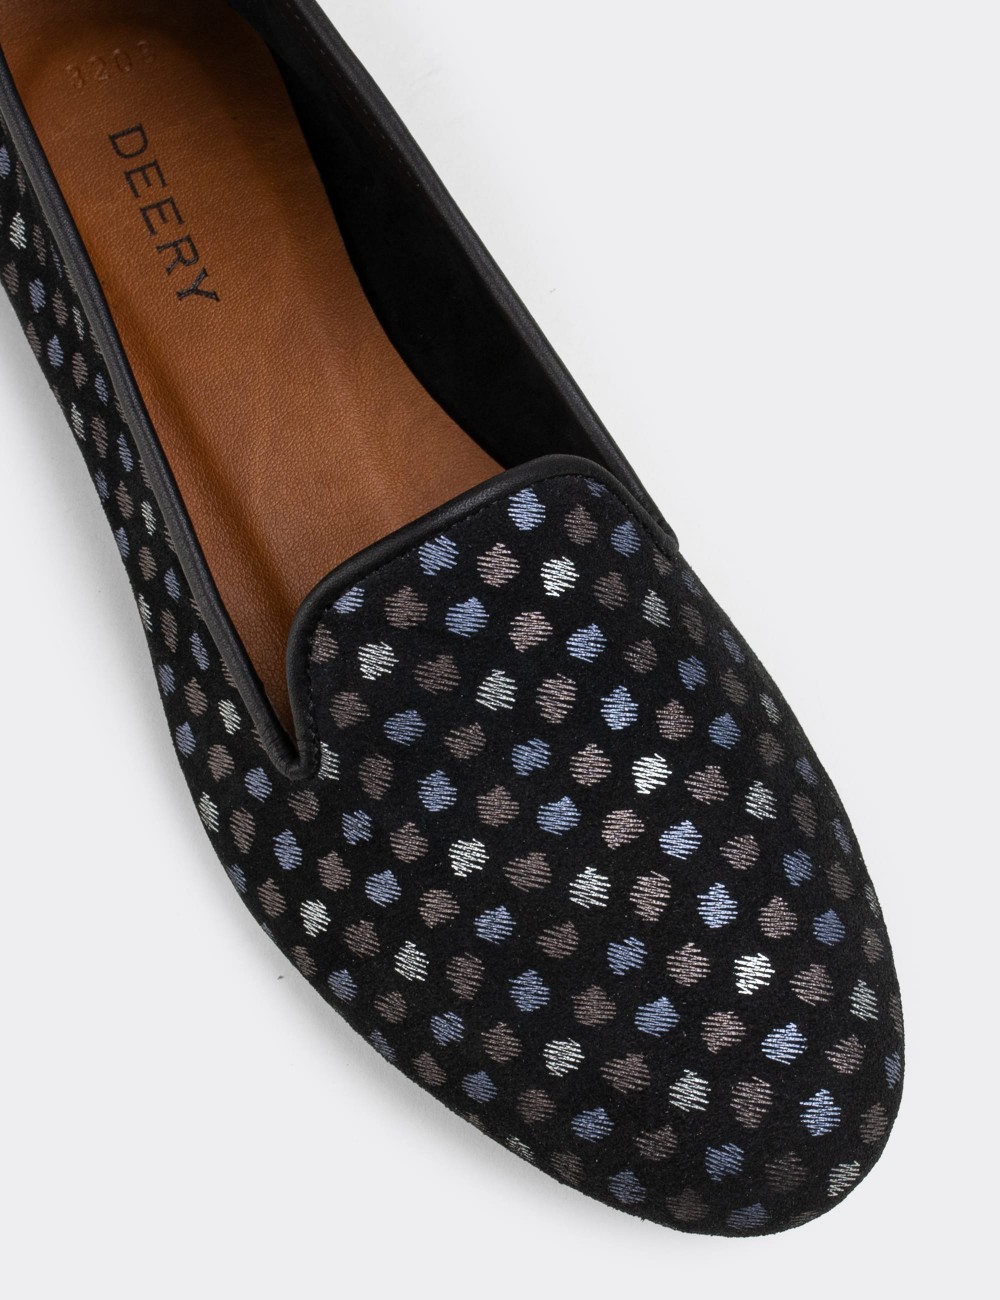 Black Nubuck Leather Loafers  - E3208ZSYHC17